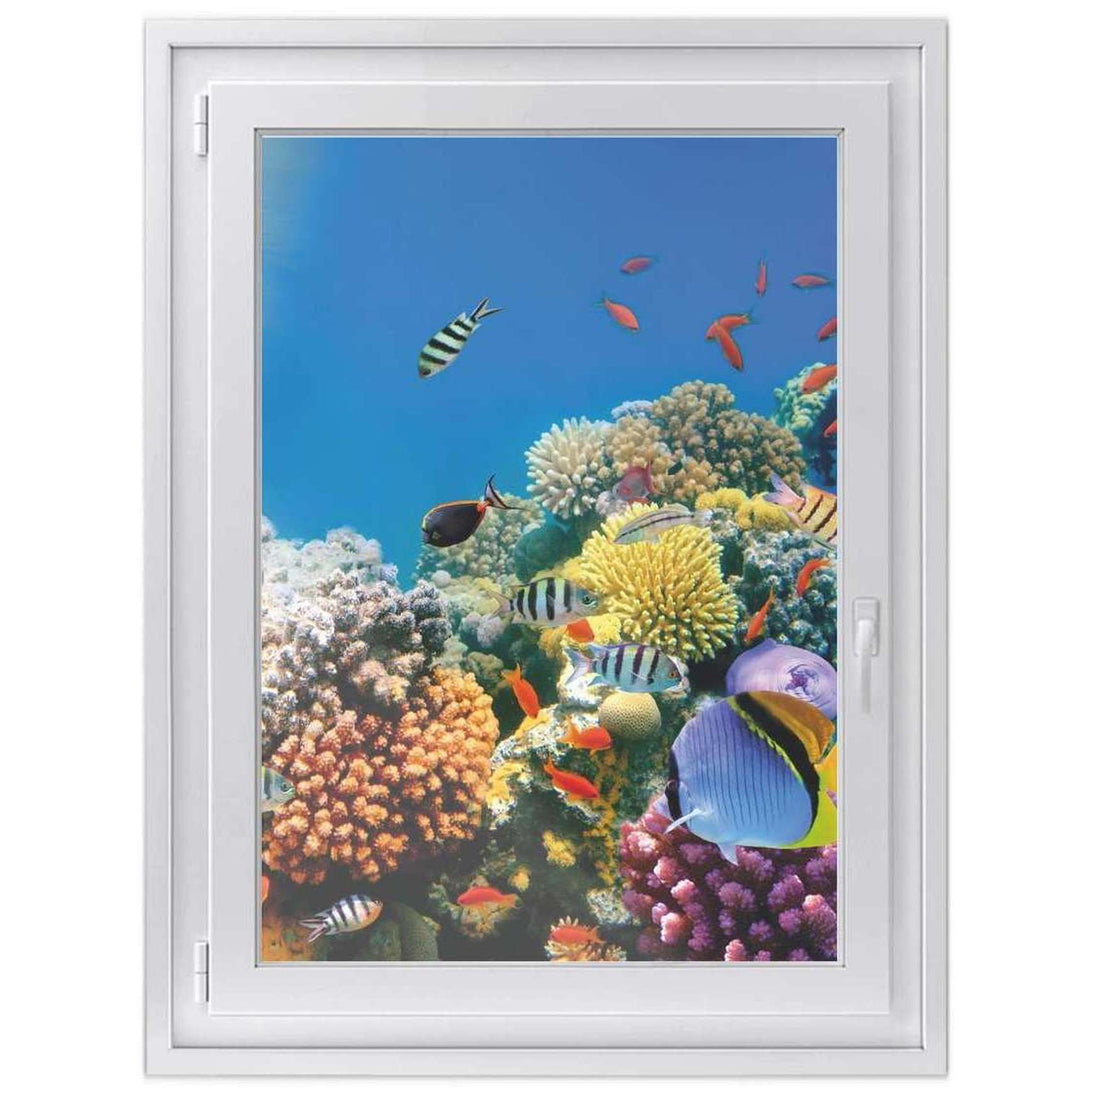 Fensterfolie [hoch] -Coral Reef- Größe: 70x100 cm